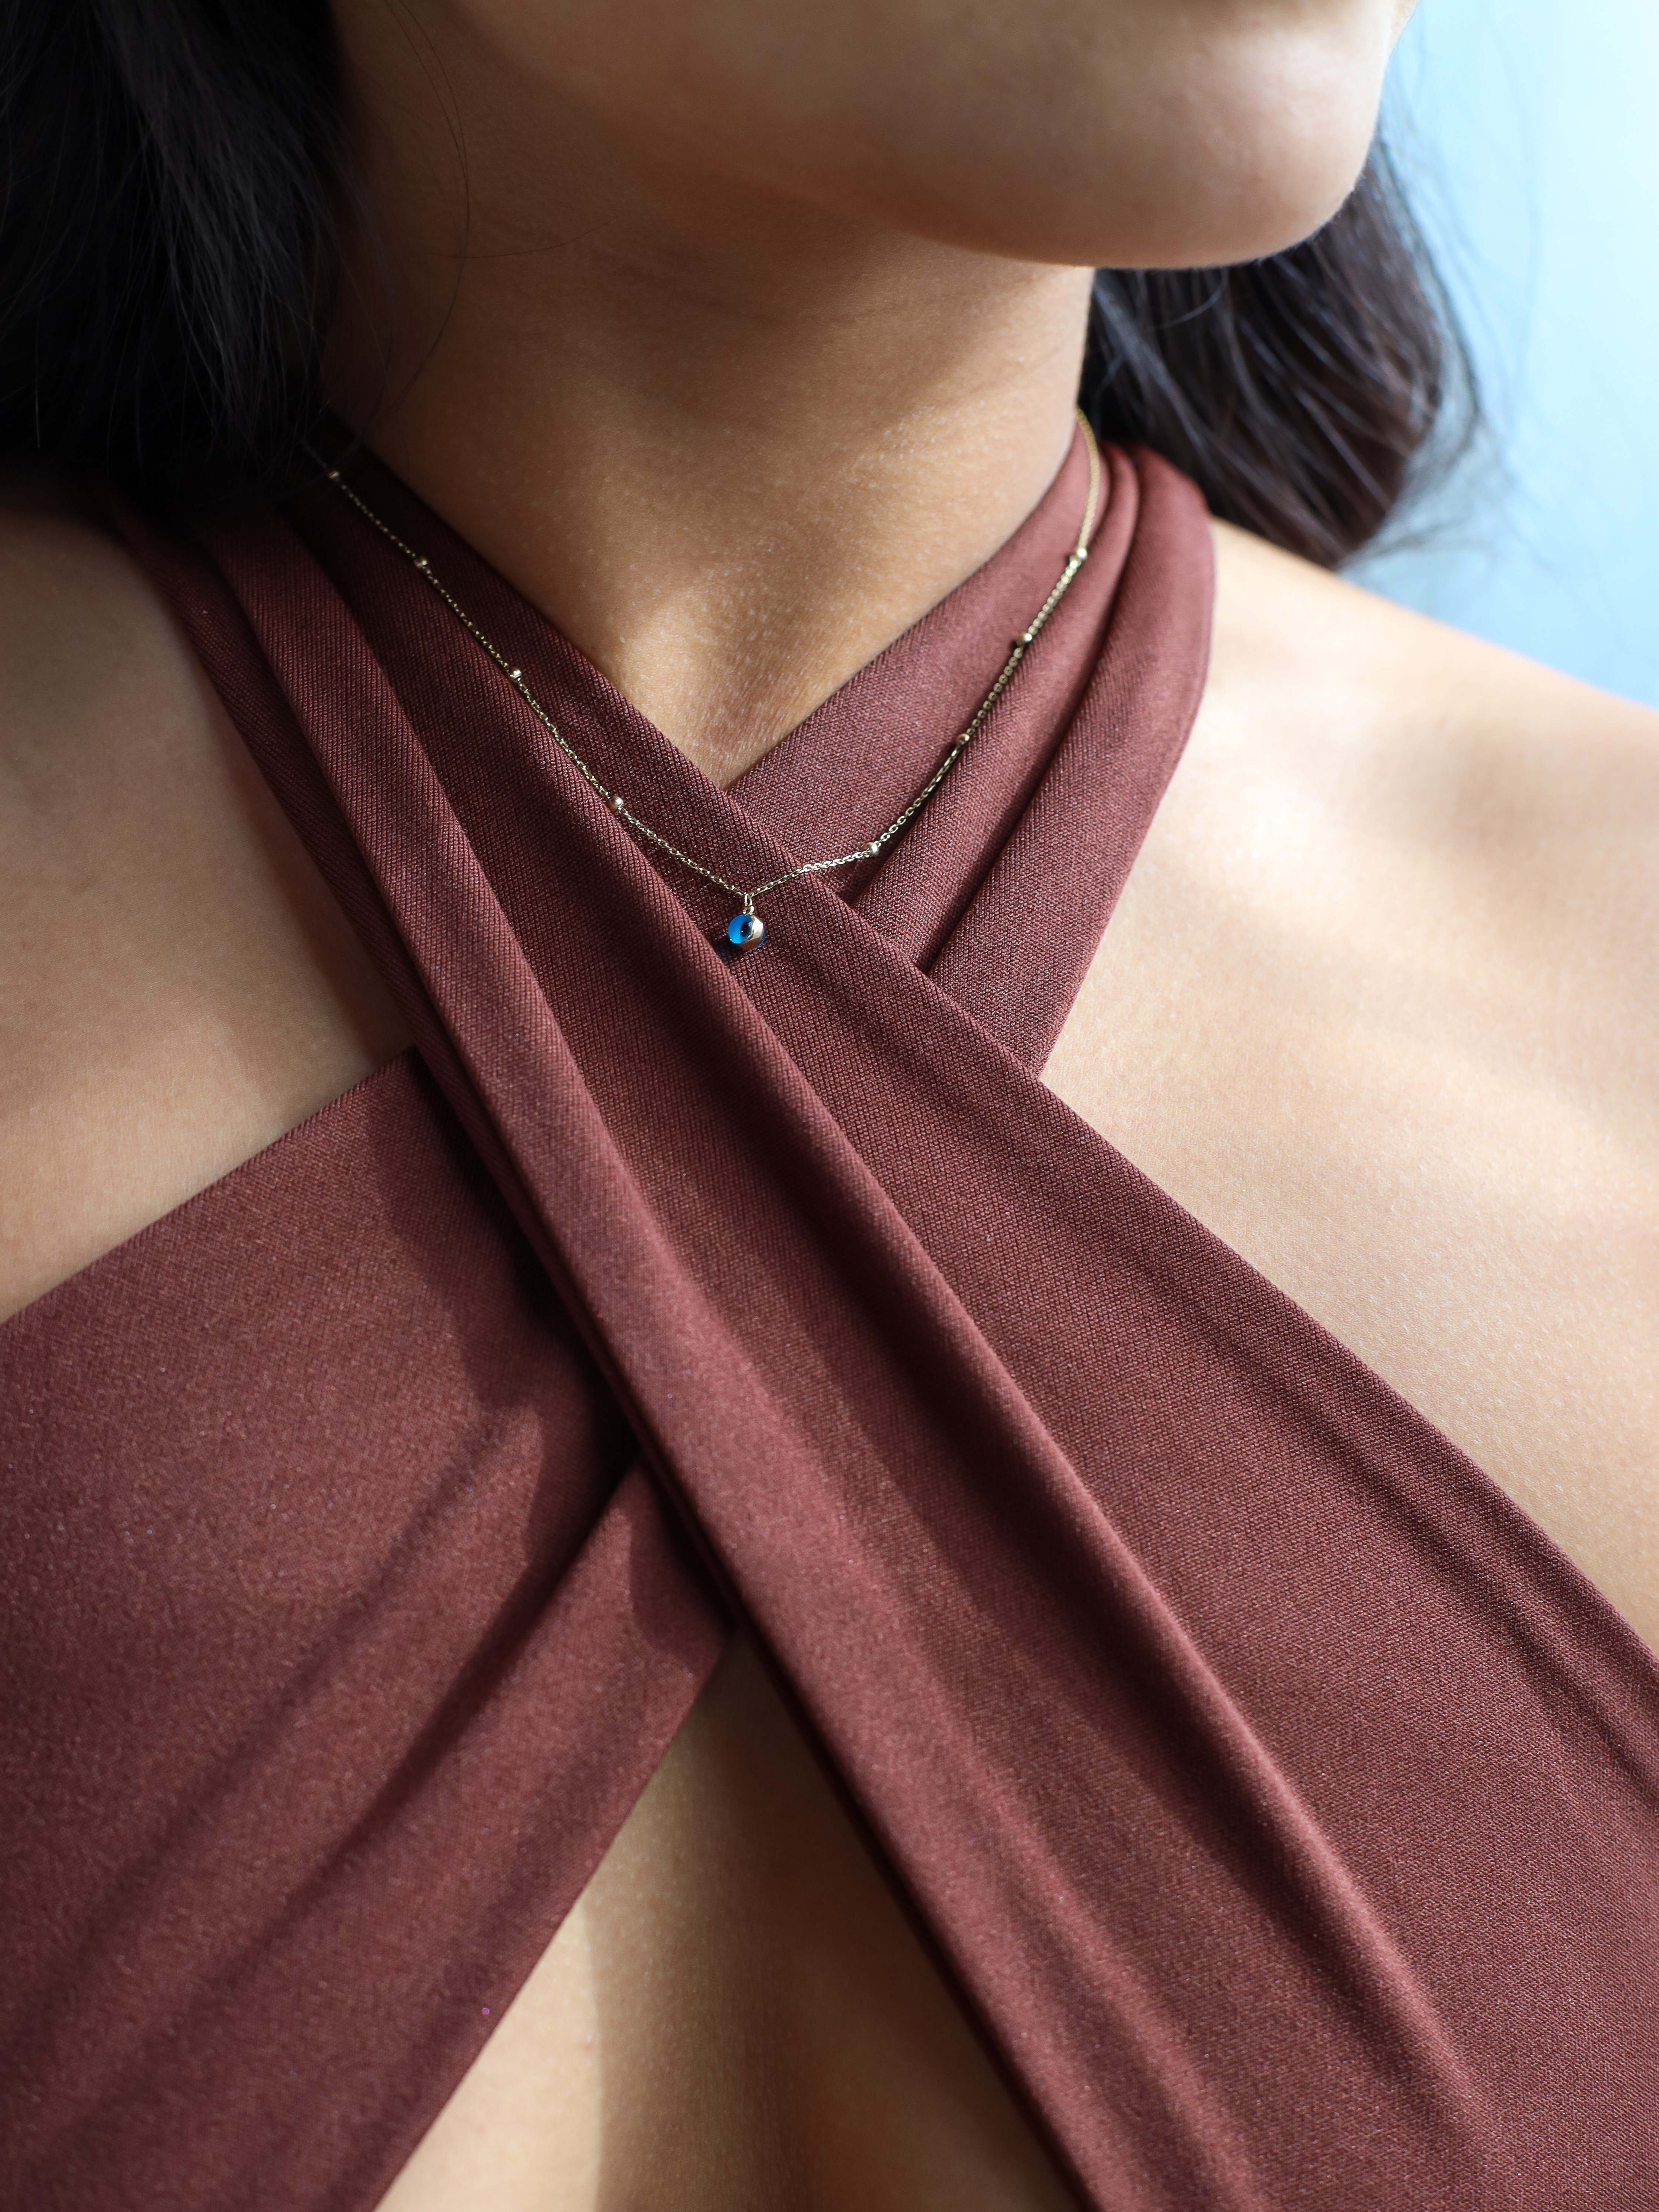 Orijin evil eye necklace around a model&#x27;s neck